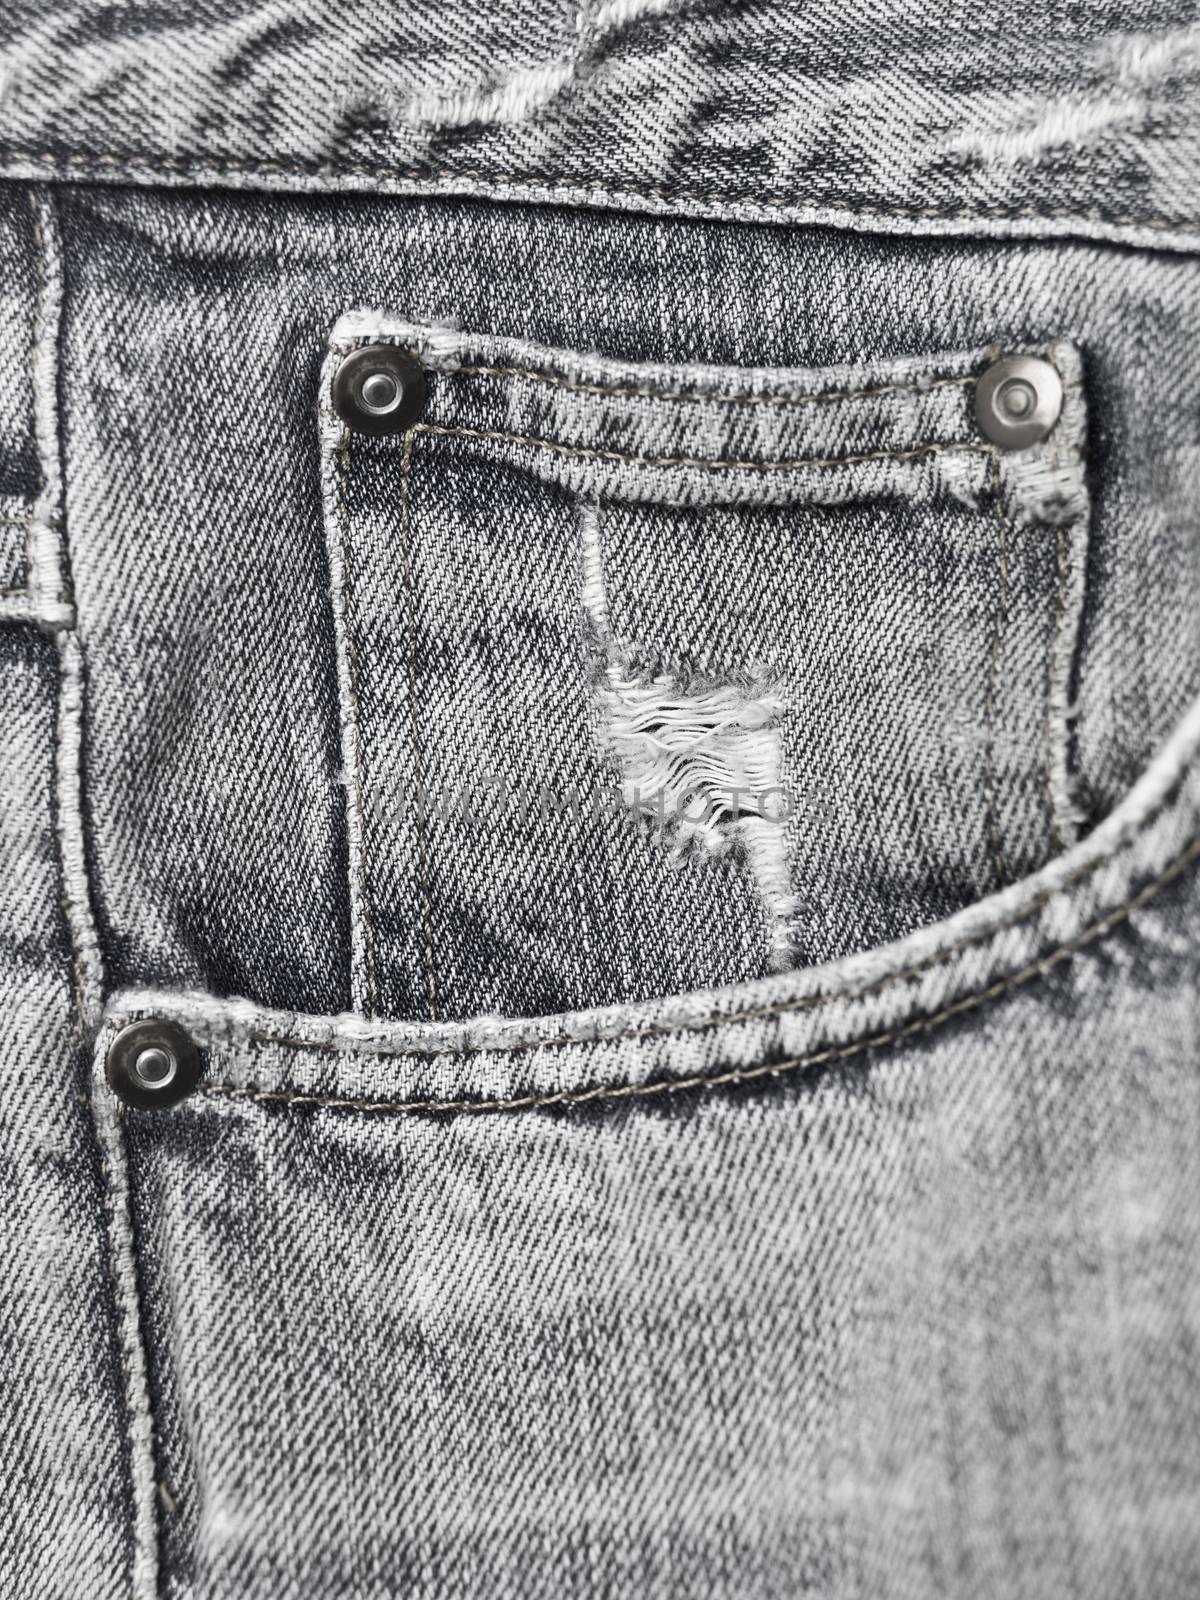 Blue jeans texture by gemenacom